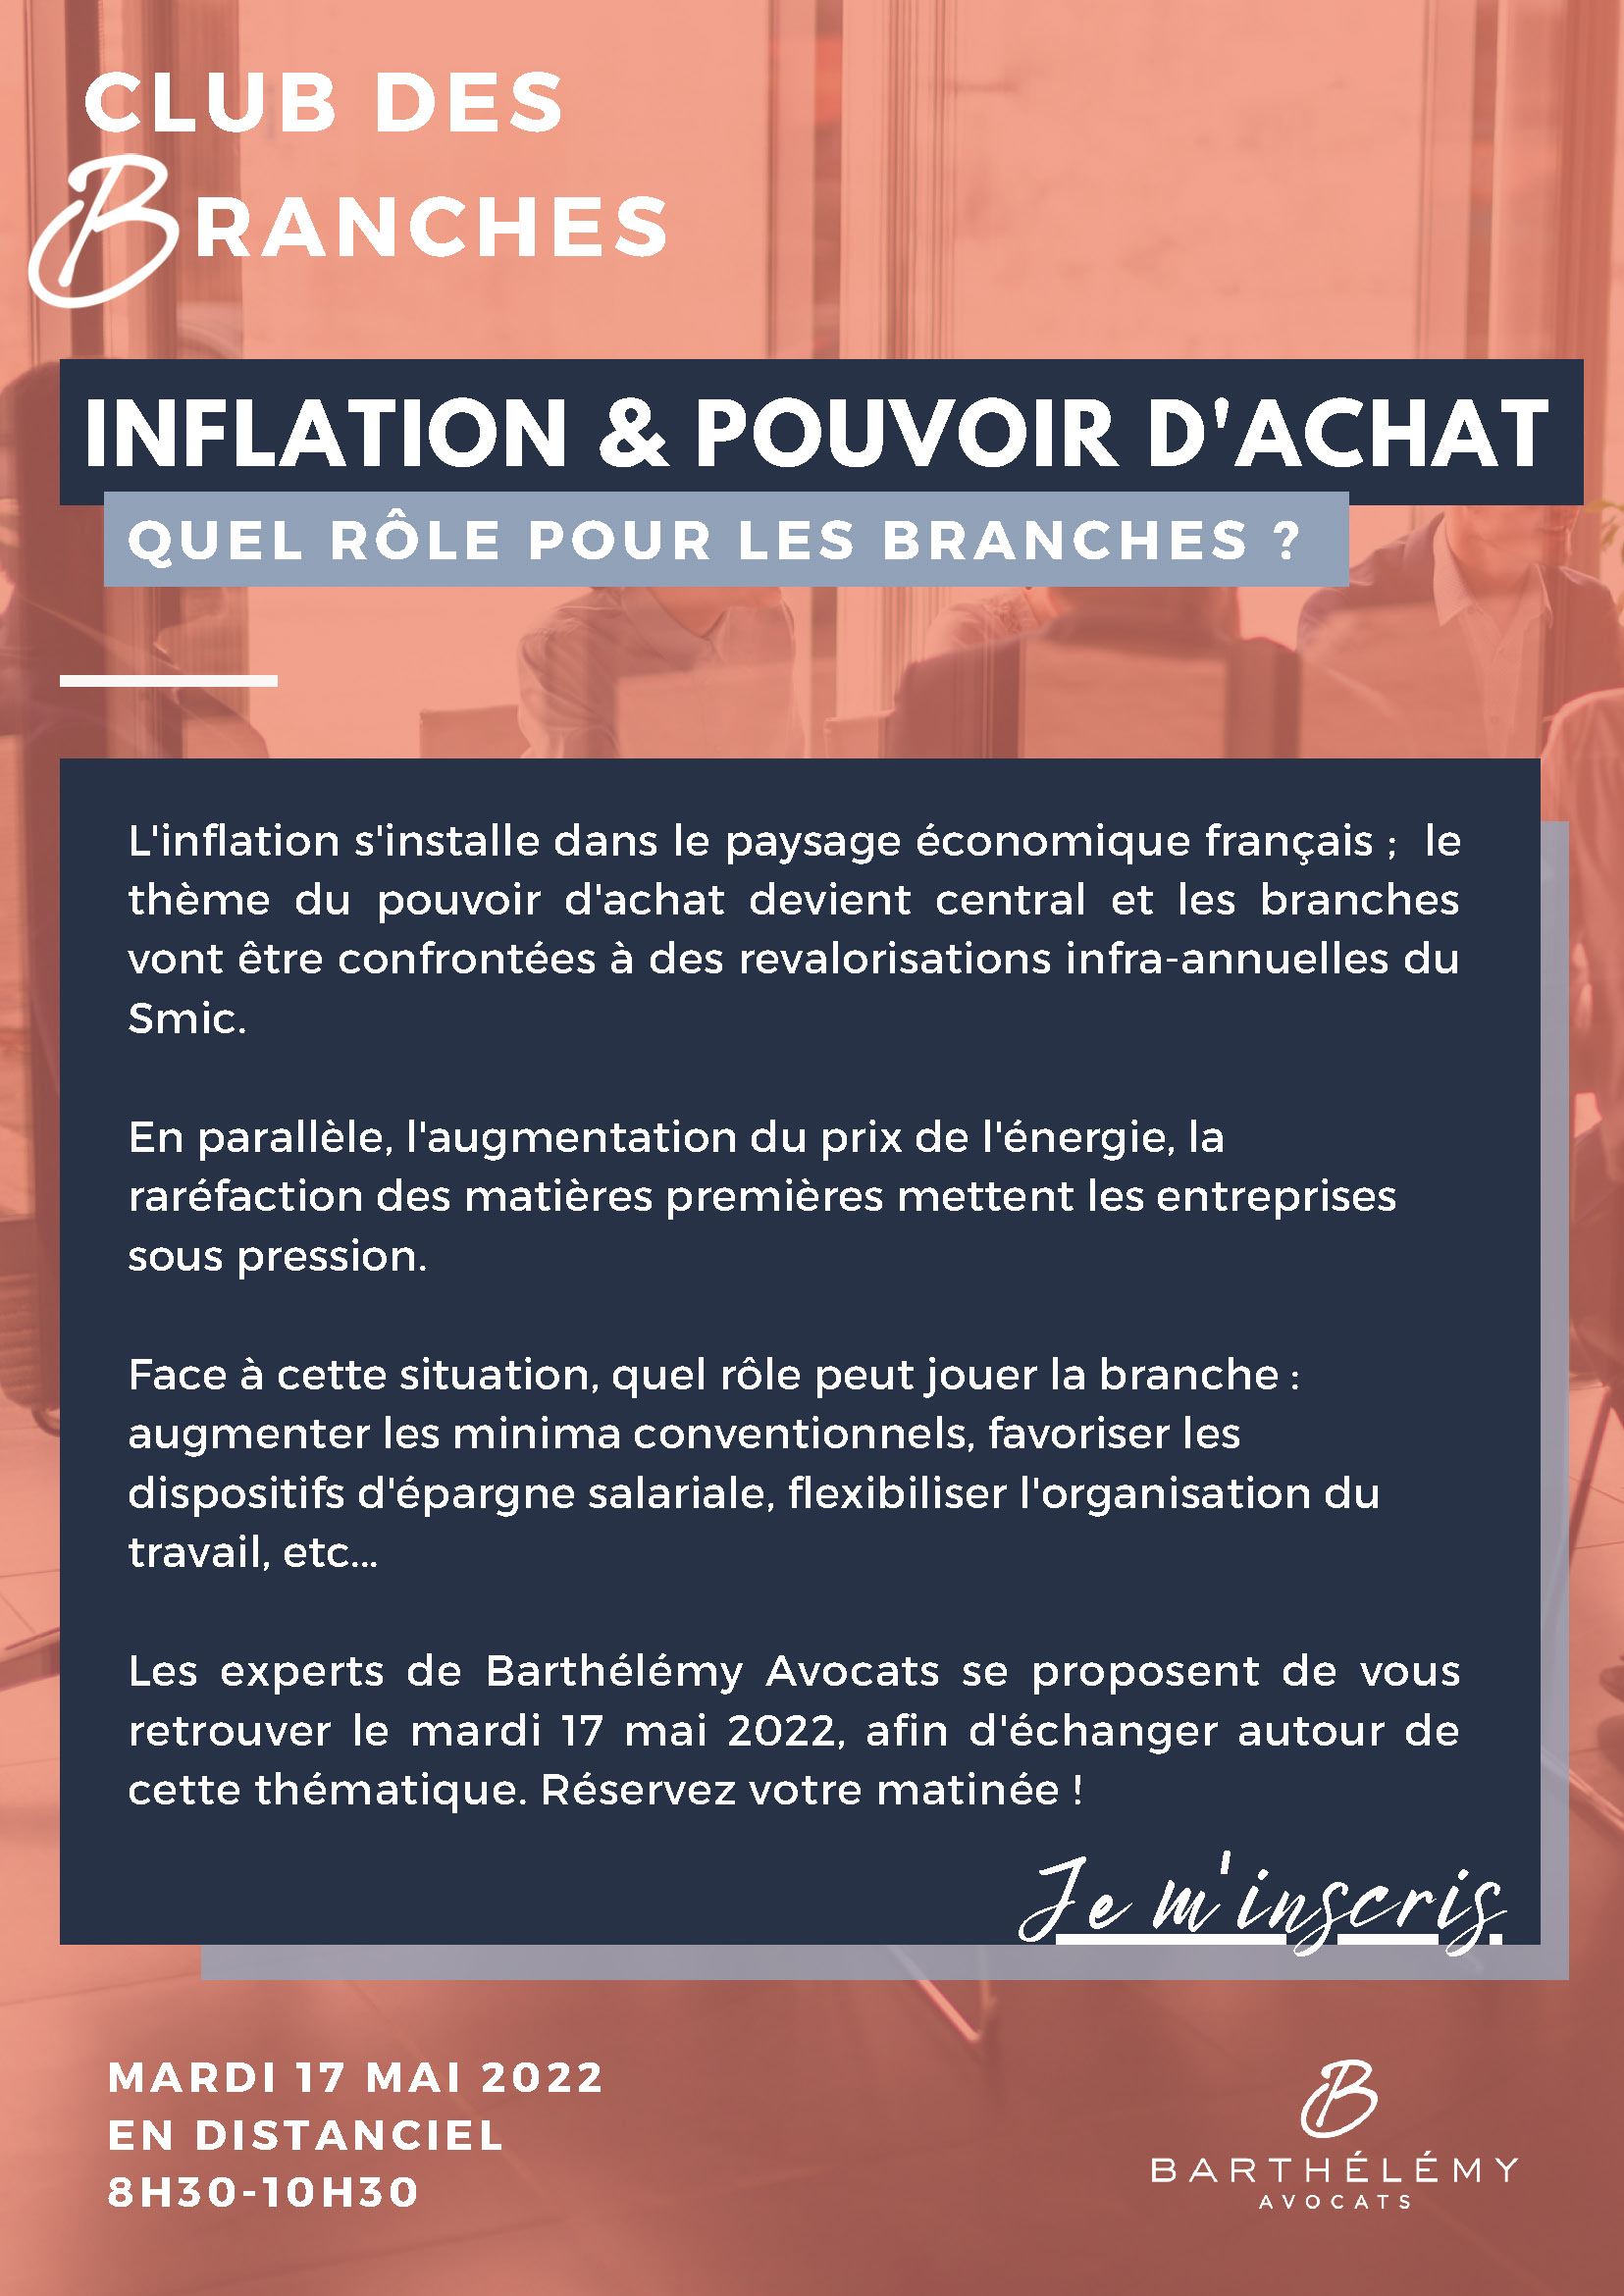 Club des Branches - Inflation & pouvoir d'achat - mardi 17 mai 2022